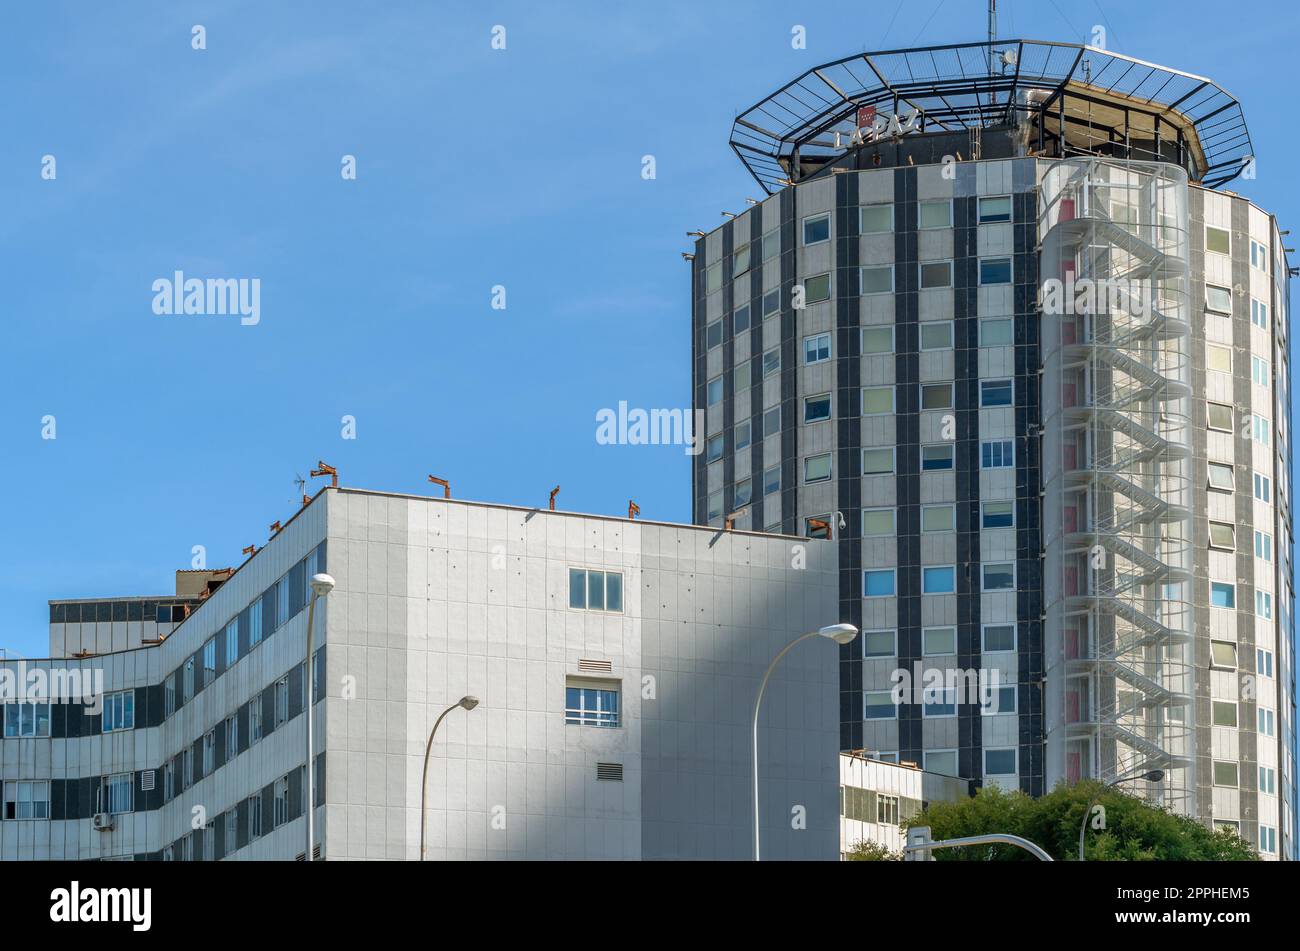 MADRID, SPANIEN - 6. OKTOBER 2021: Blick auf das Universitätskrankenhaus La Paz in Madrid, eines der größten Krankenhäuser und besten öffentlichen Krankenhäuser in Spanien Stockfoto